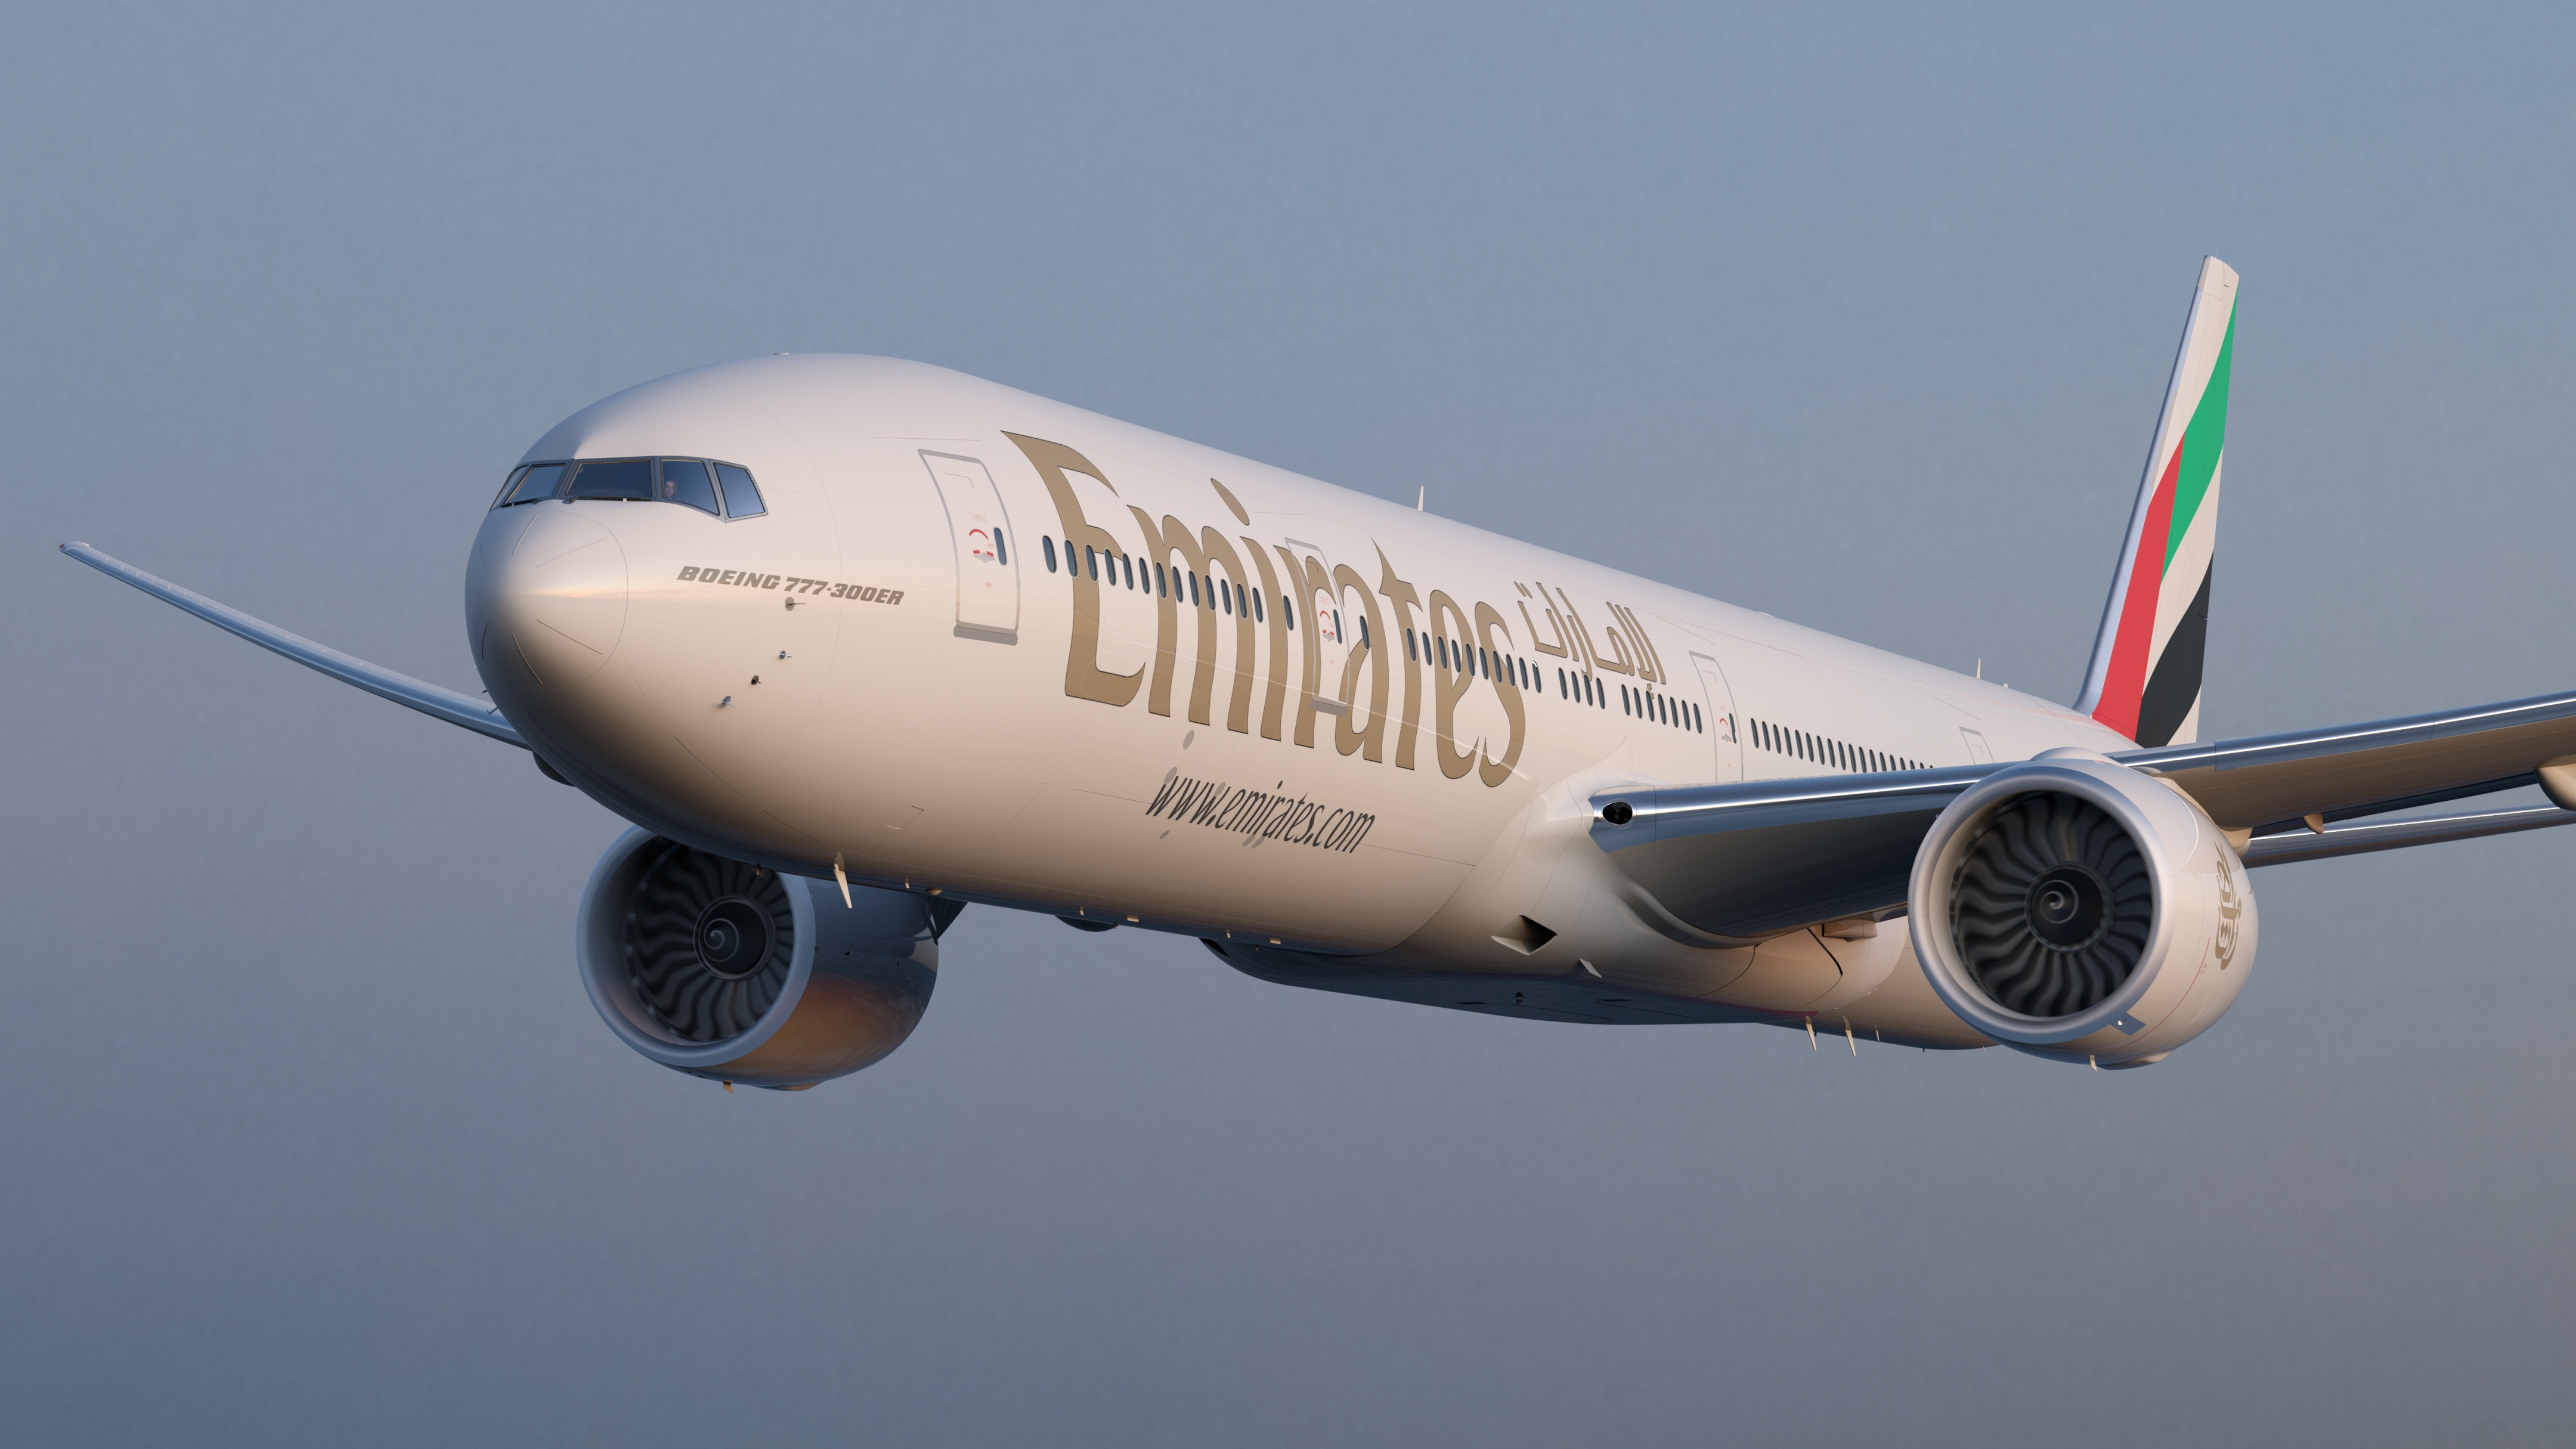 Con Emirates tariffe speciali fino all’estate